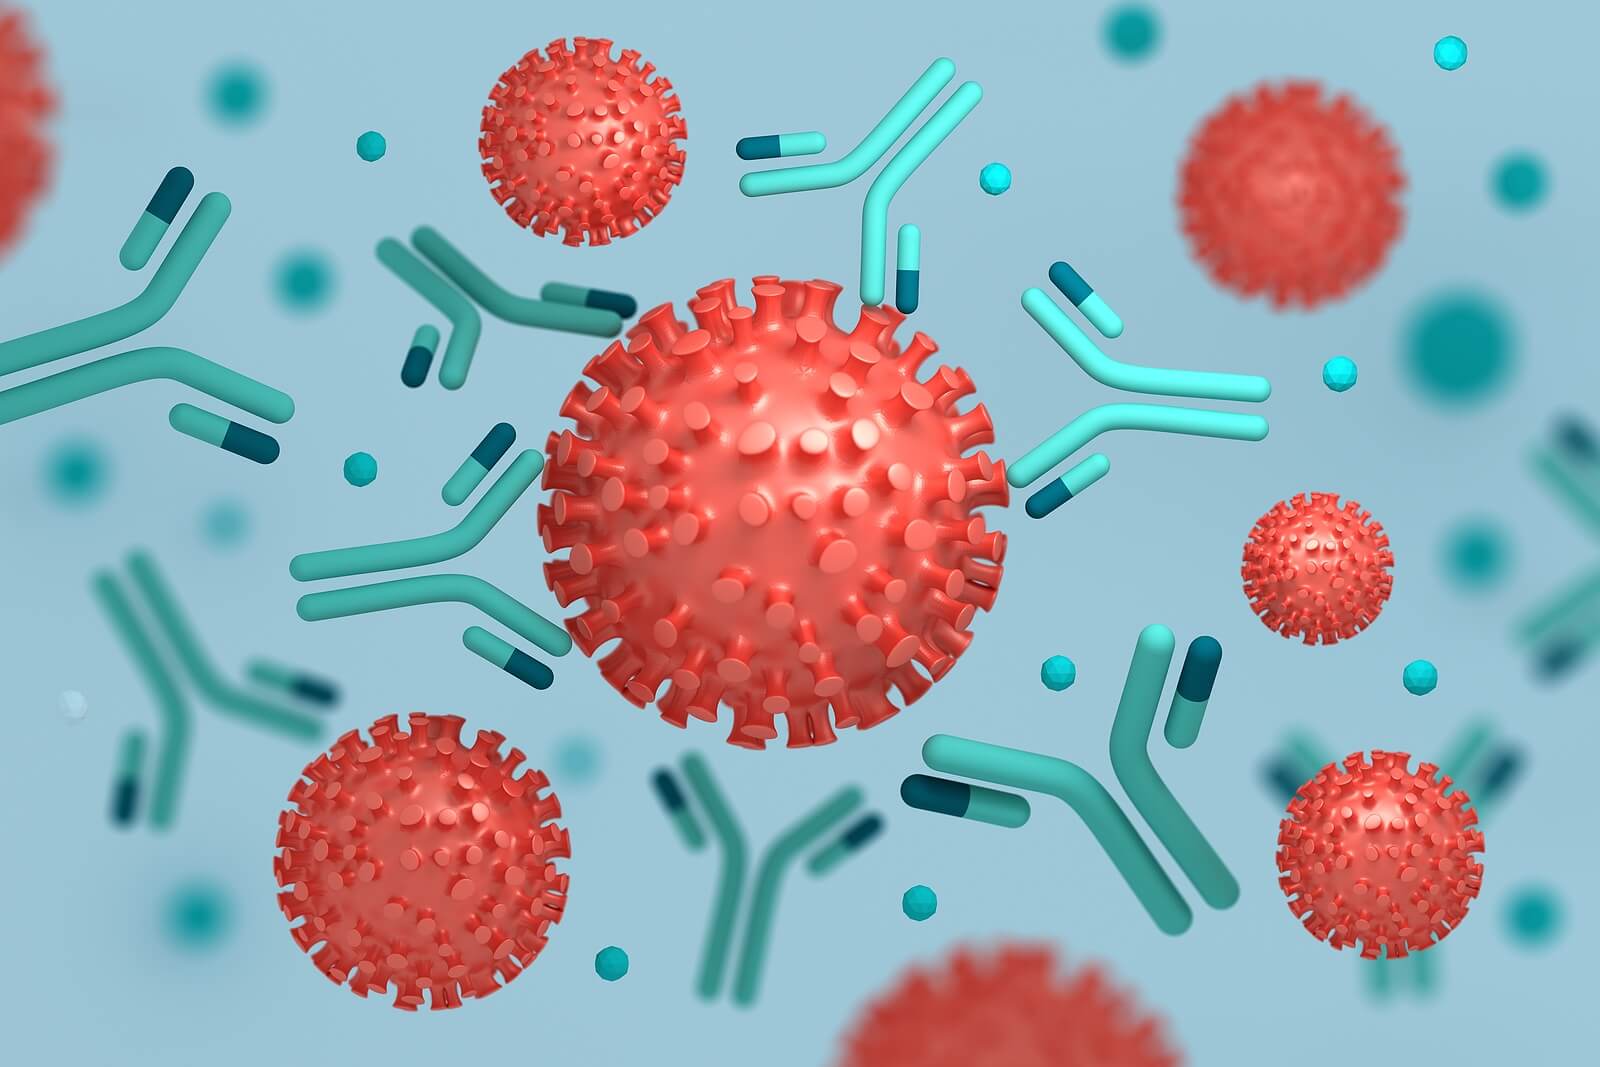 Os testes de antígeno são baseados no funcionamento do sistema imunológico